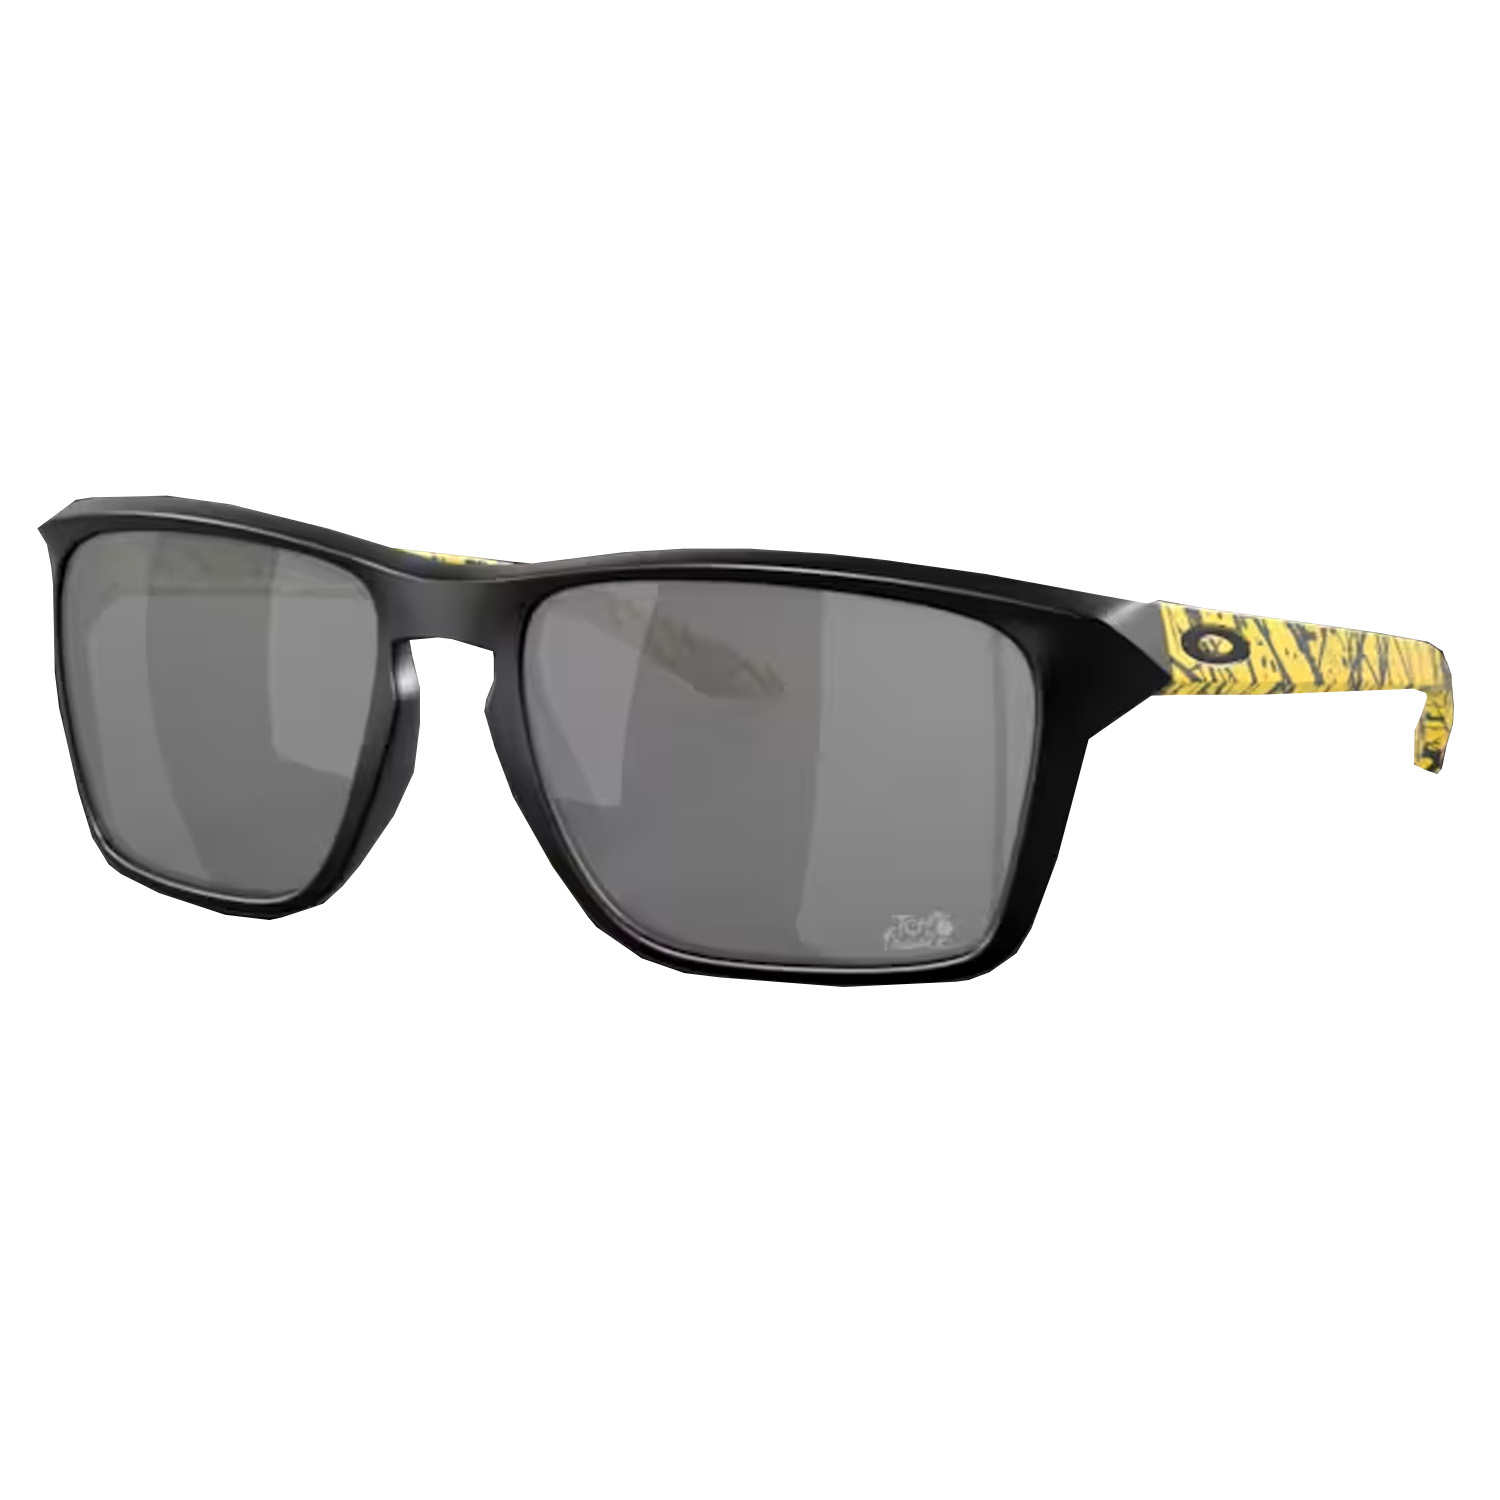 Oakley Sylas Tour De France Collection Sunglasses